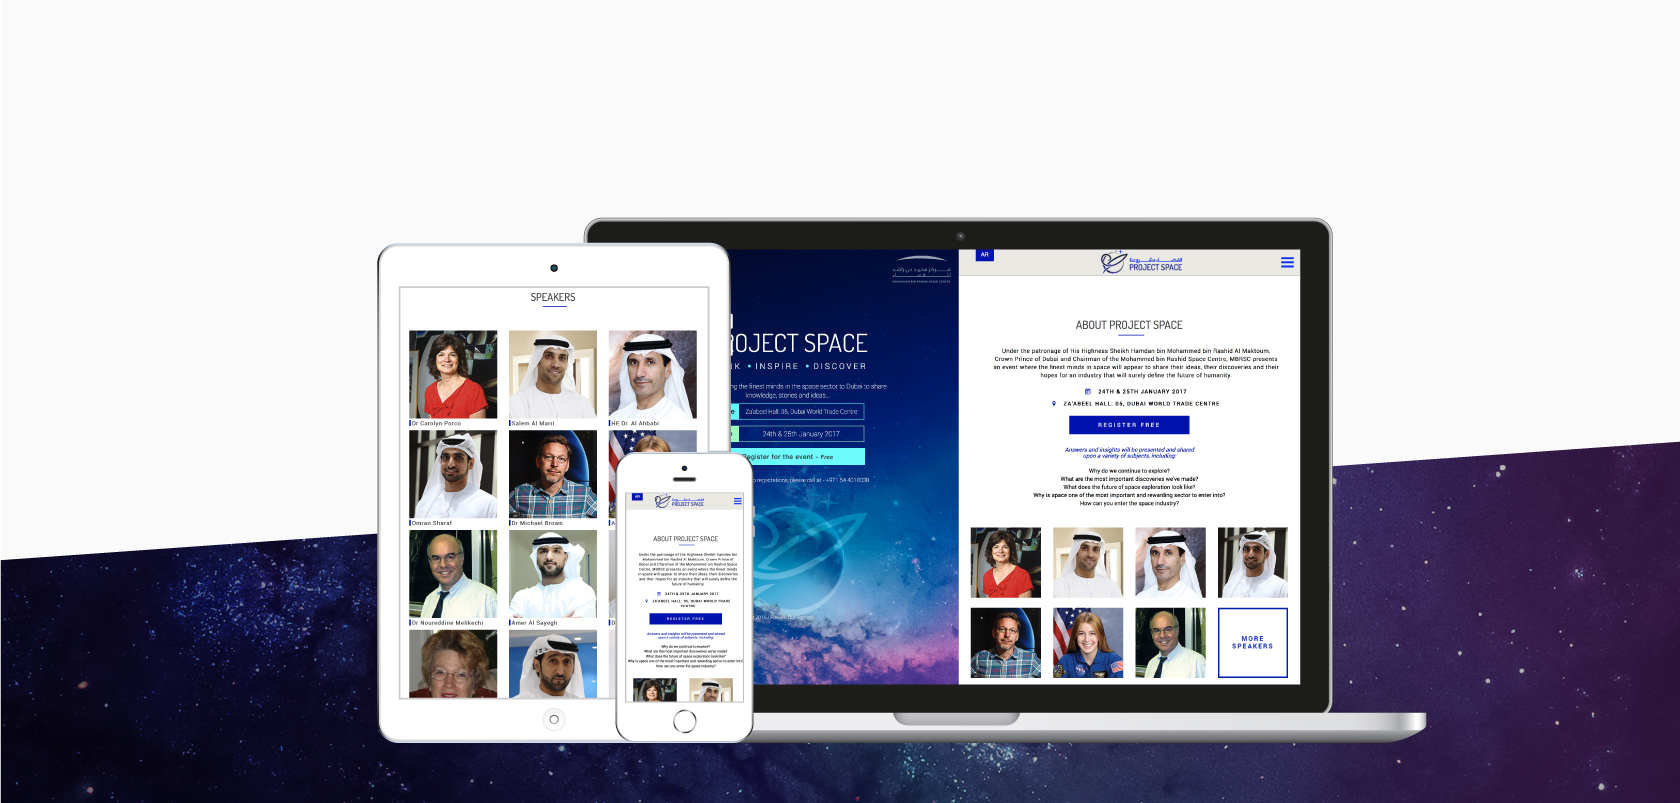 Web Design Services in Dubai, UAE